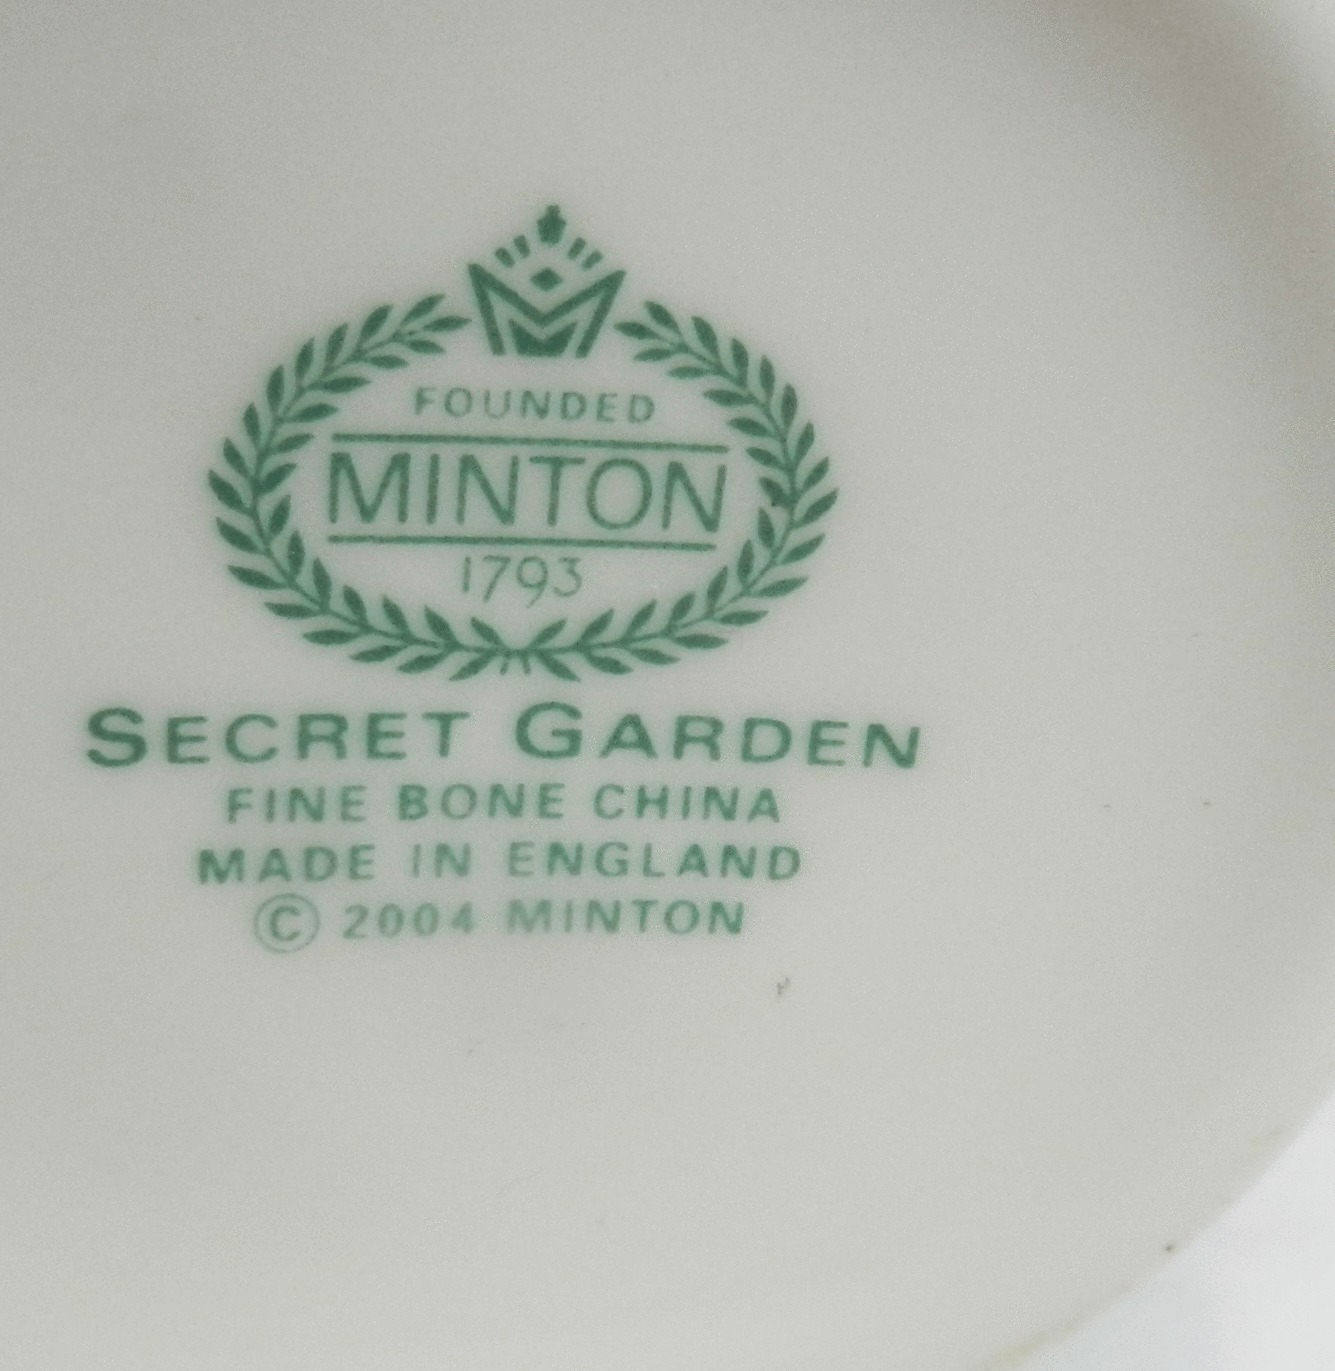 イギリス食器 ミントン(MINTON)の歴史とマークの移り変わり | 古き旅